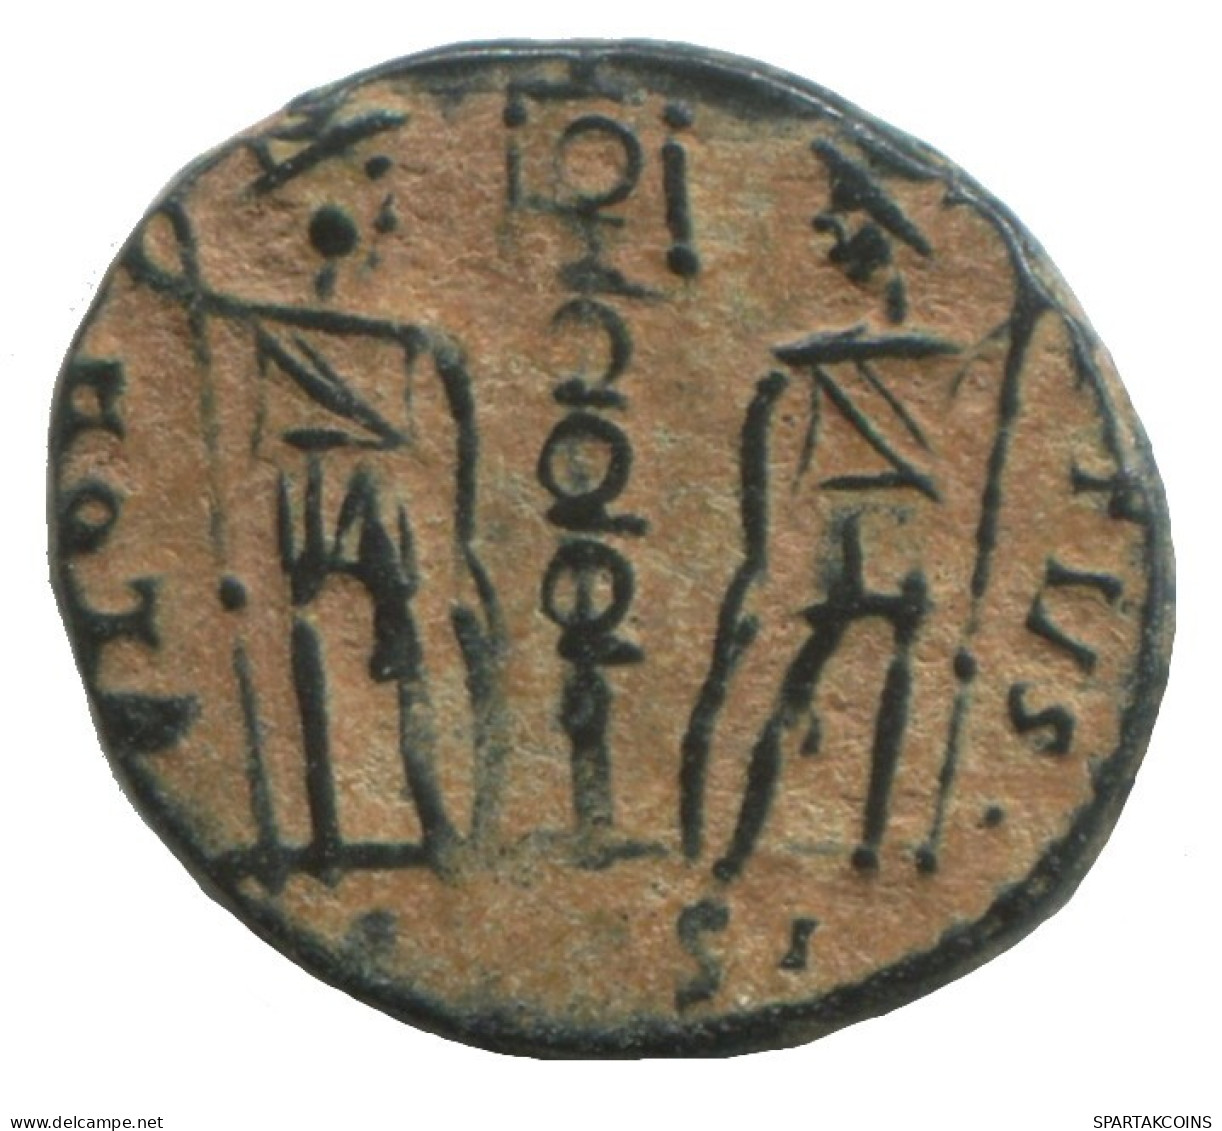 CONSTANTIUS II AD347-348 GLORIA EXERCITVS TWO SOLDIERS 1.4g/15mm #ANN1526.10.D.A - L'Empire Chrétien (307 à 363)